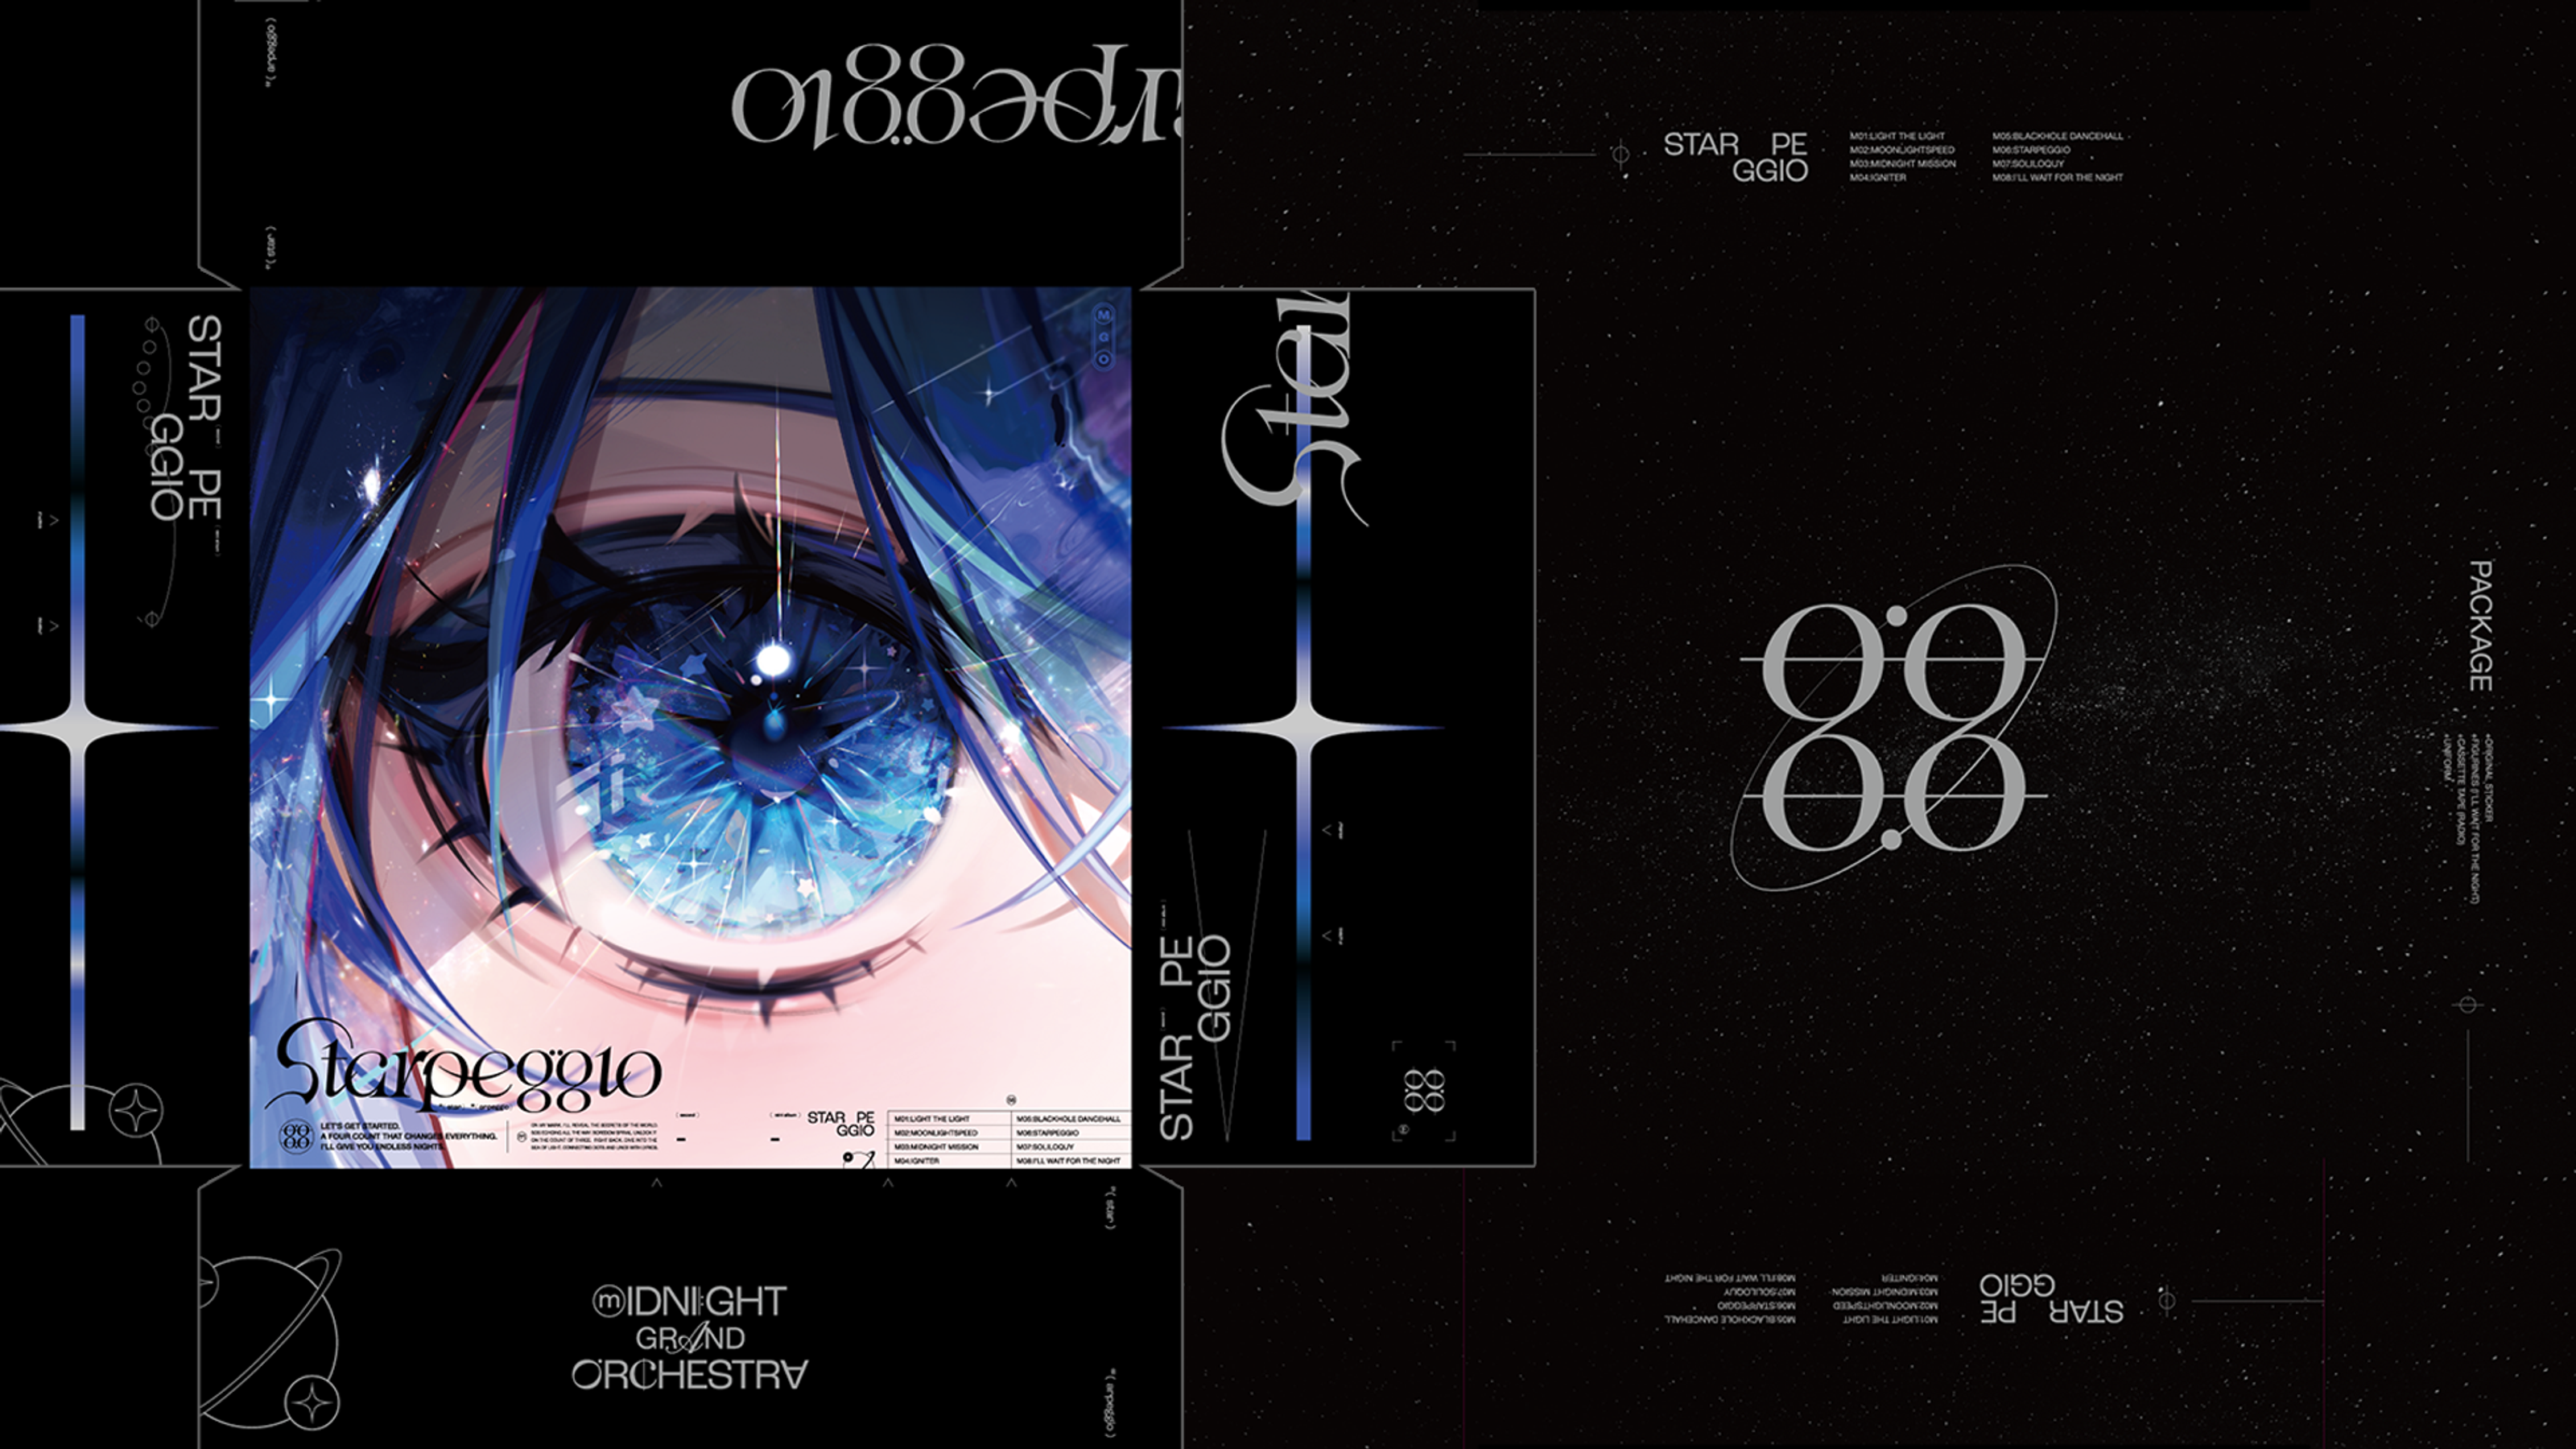 Midnight Grand Orchestra /  2nd mini album "Starpeggio"another